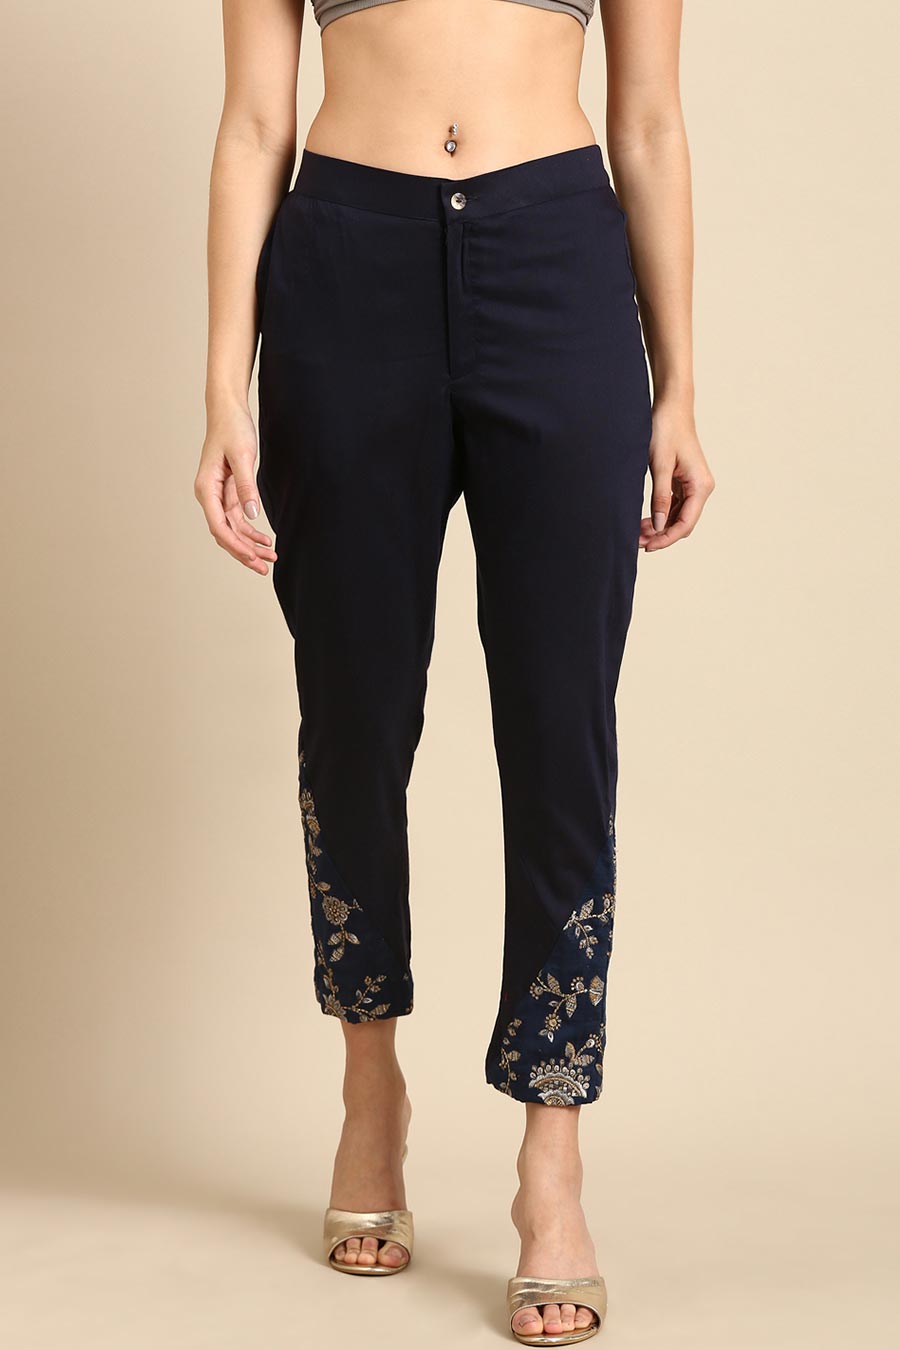 Designer Pants for Women at Bergdorf Goodman